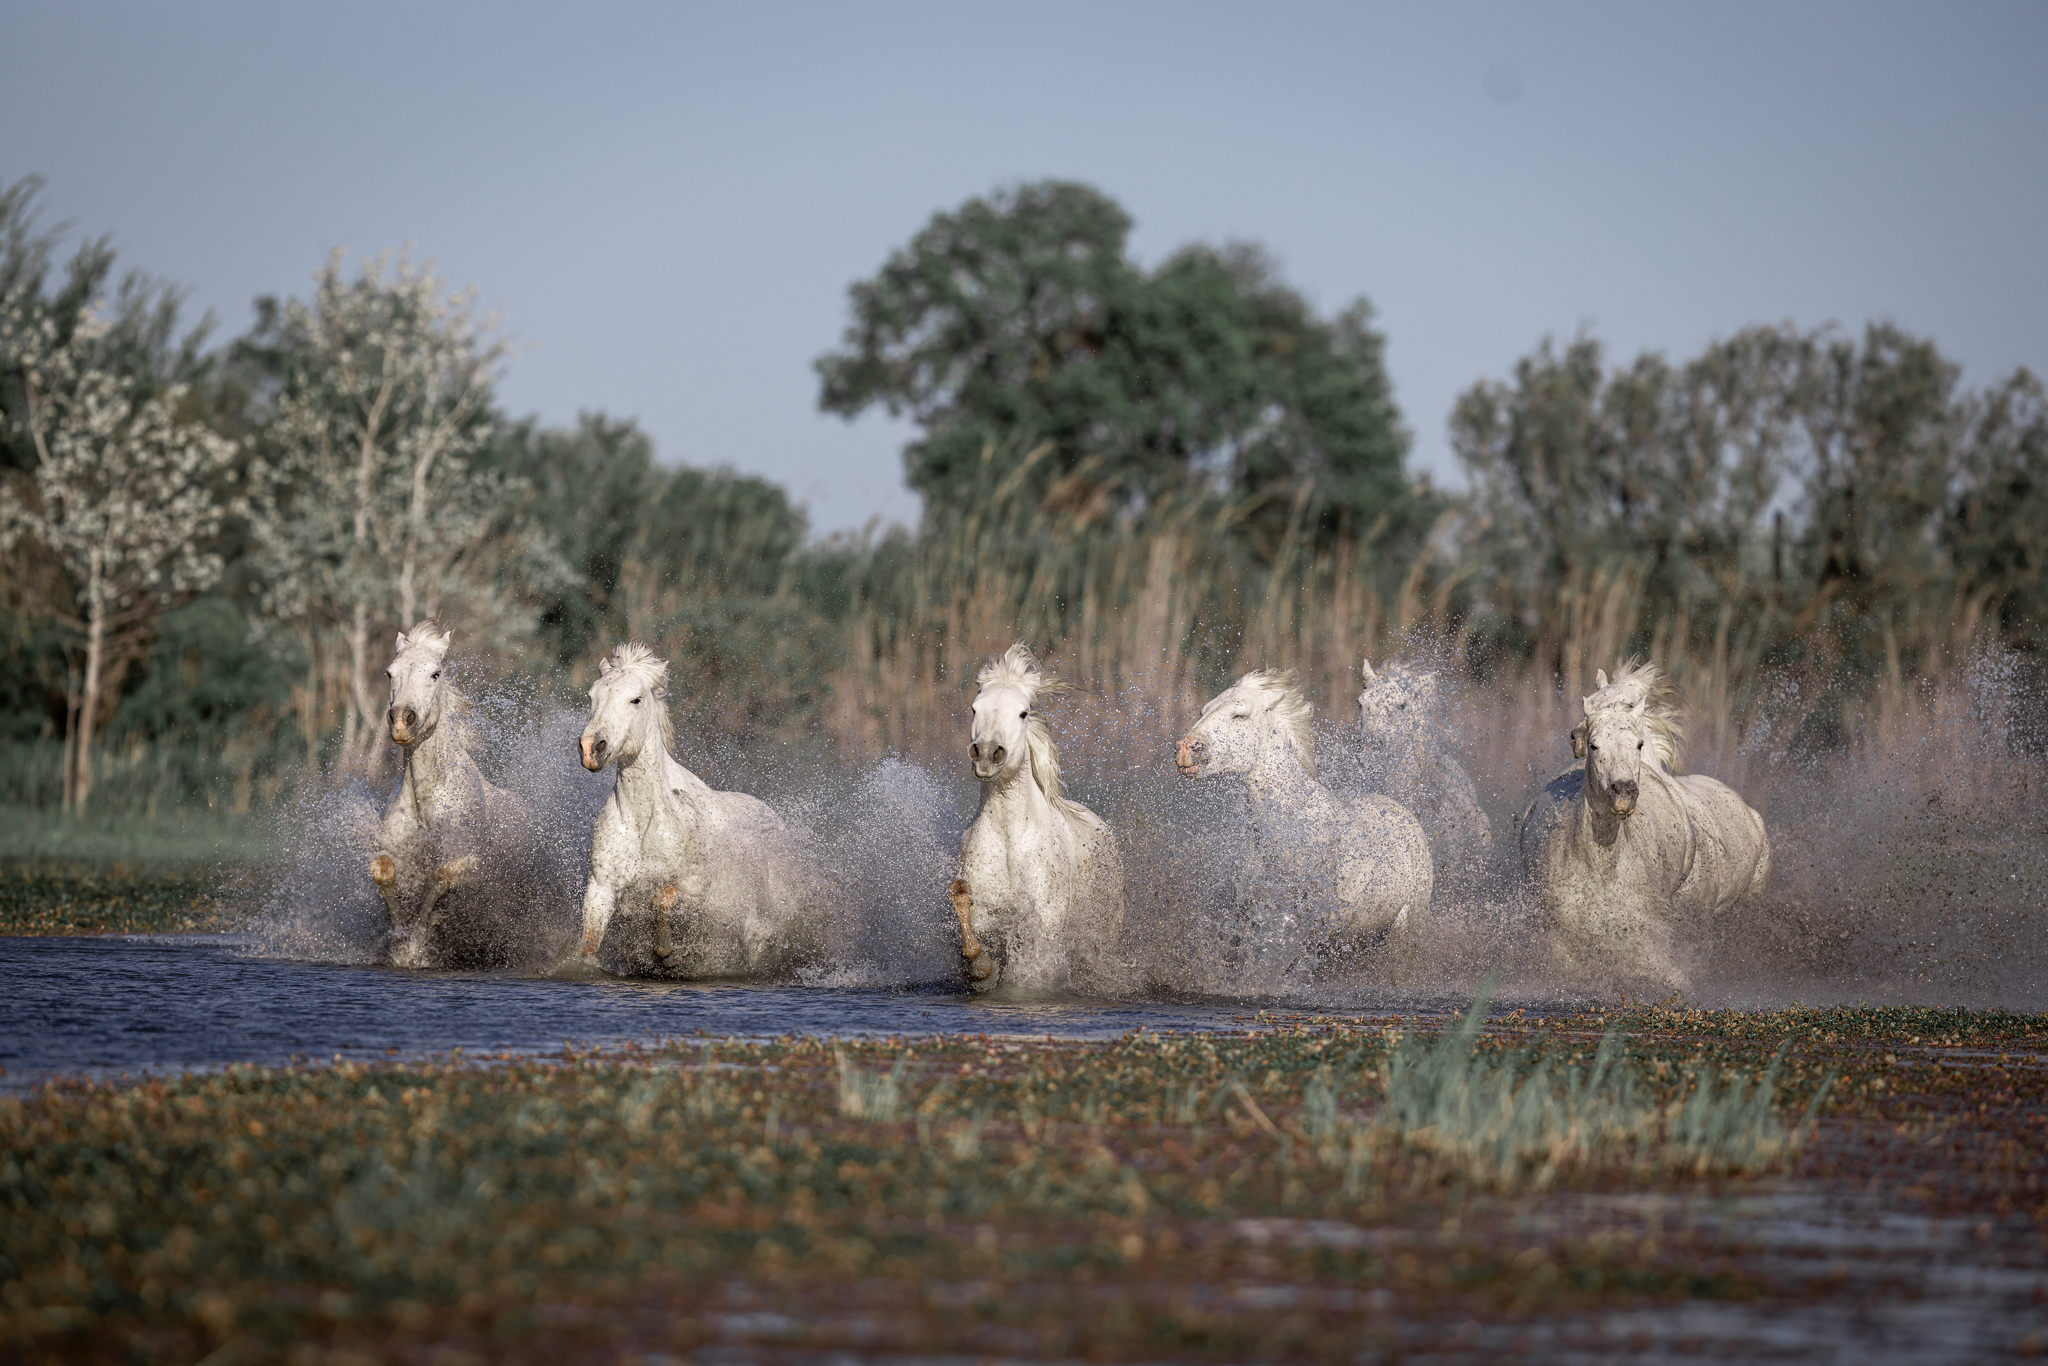 Camarguepferde im Sumpf.